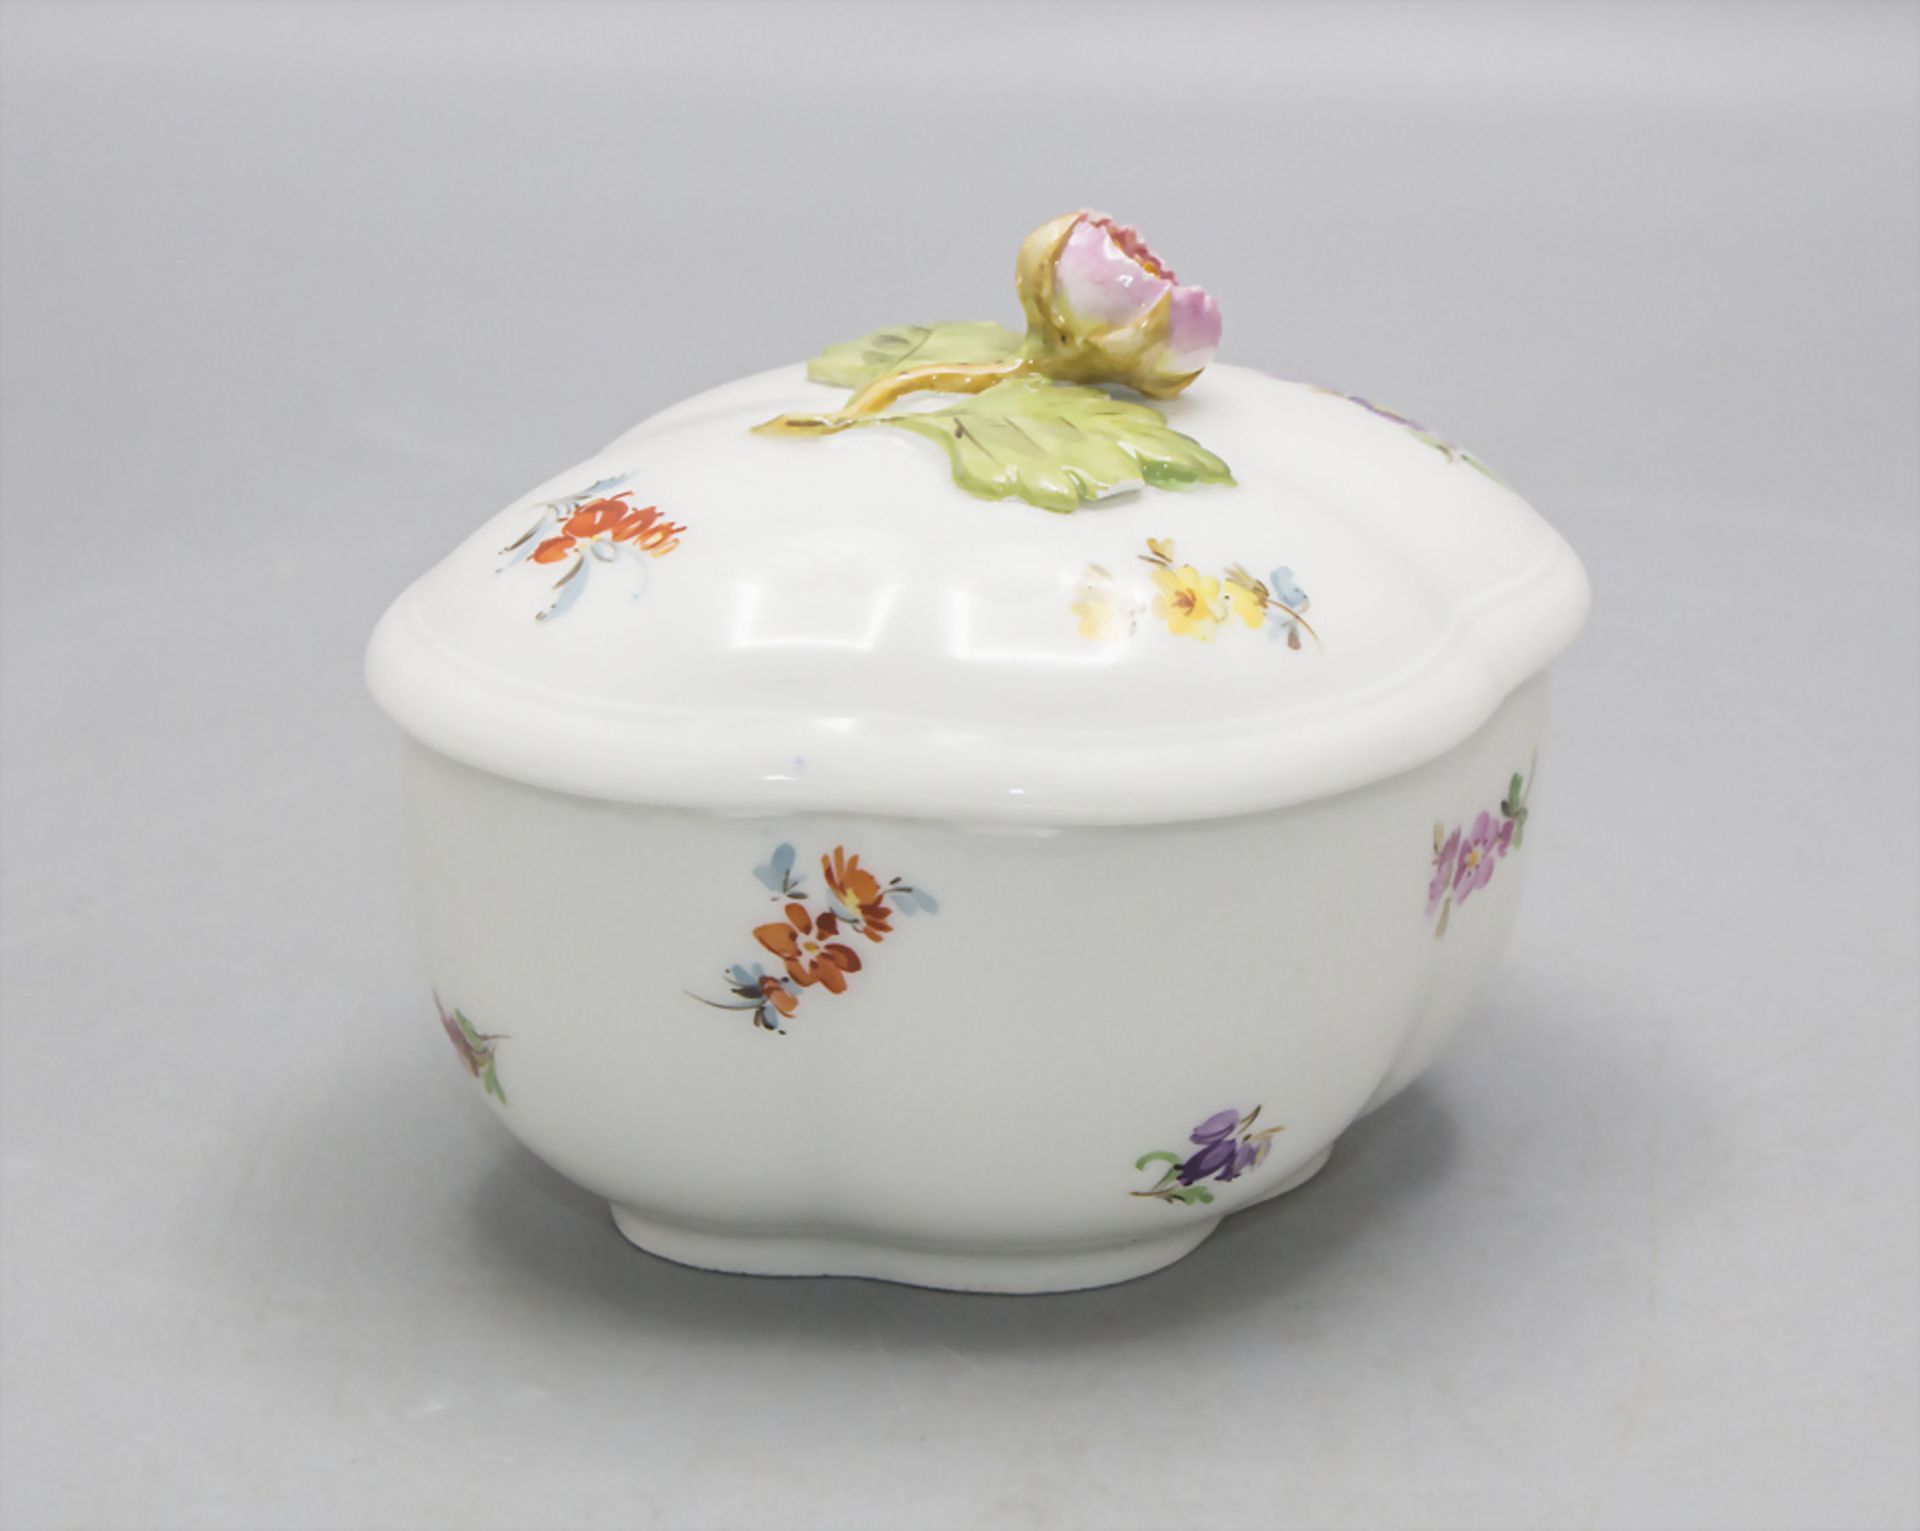 Zuckerdose mit einer Aster / A sugar bowl with an aster, Meissen, um 1880 - Image 3 of 5